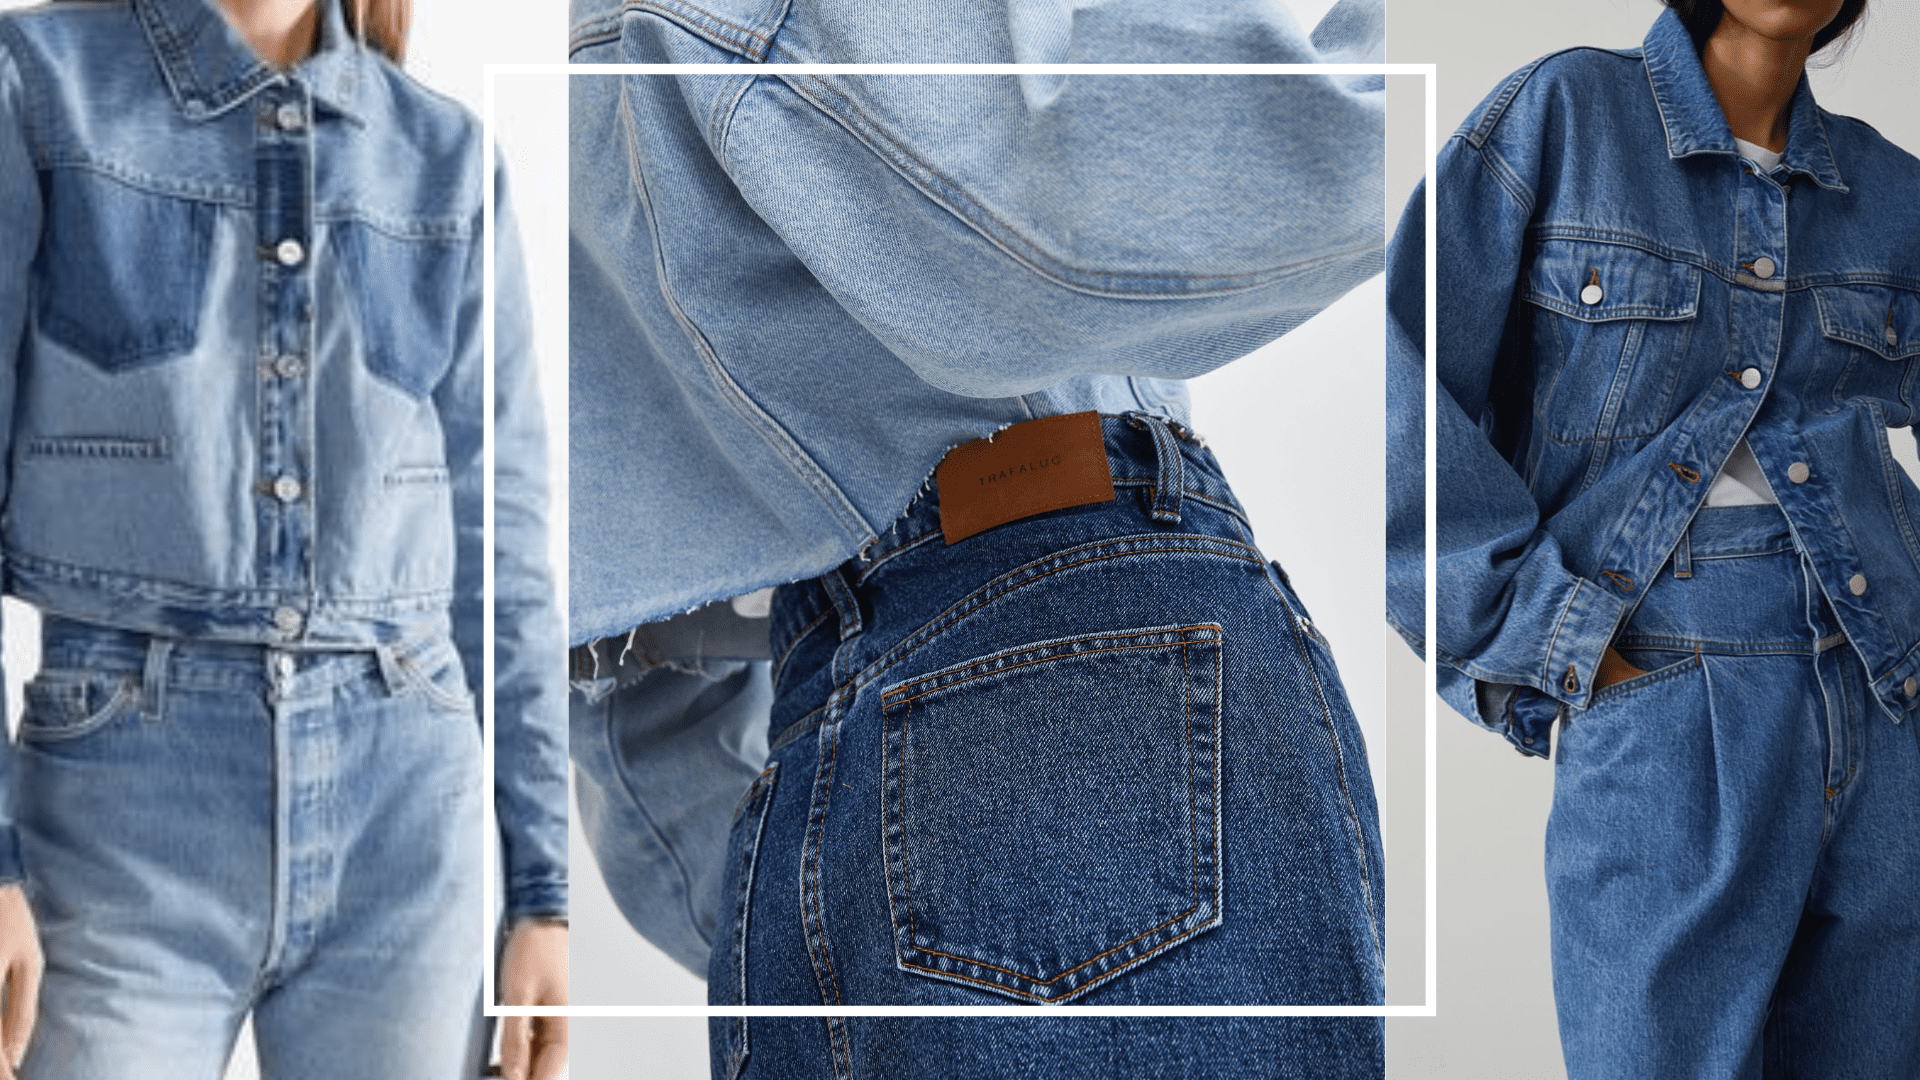 Macacão jeans: 3 ideias para te inspirar a usar a peça - Vogue